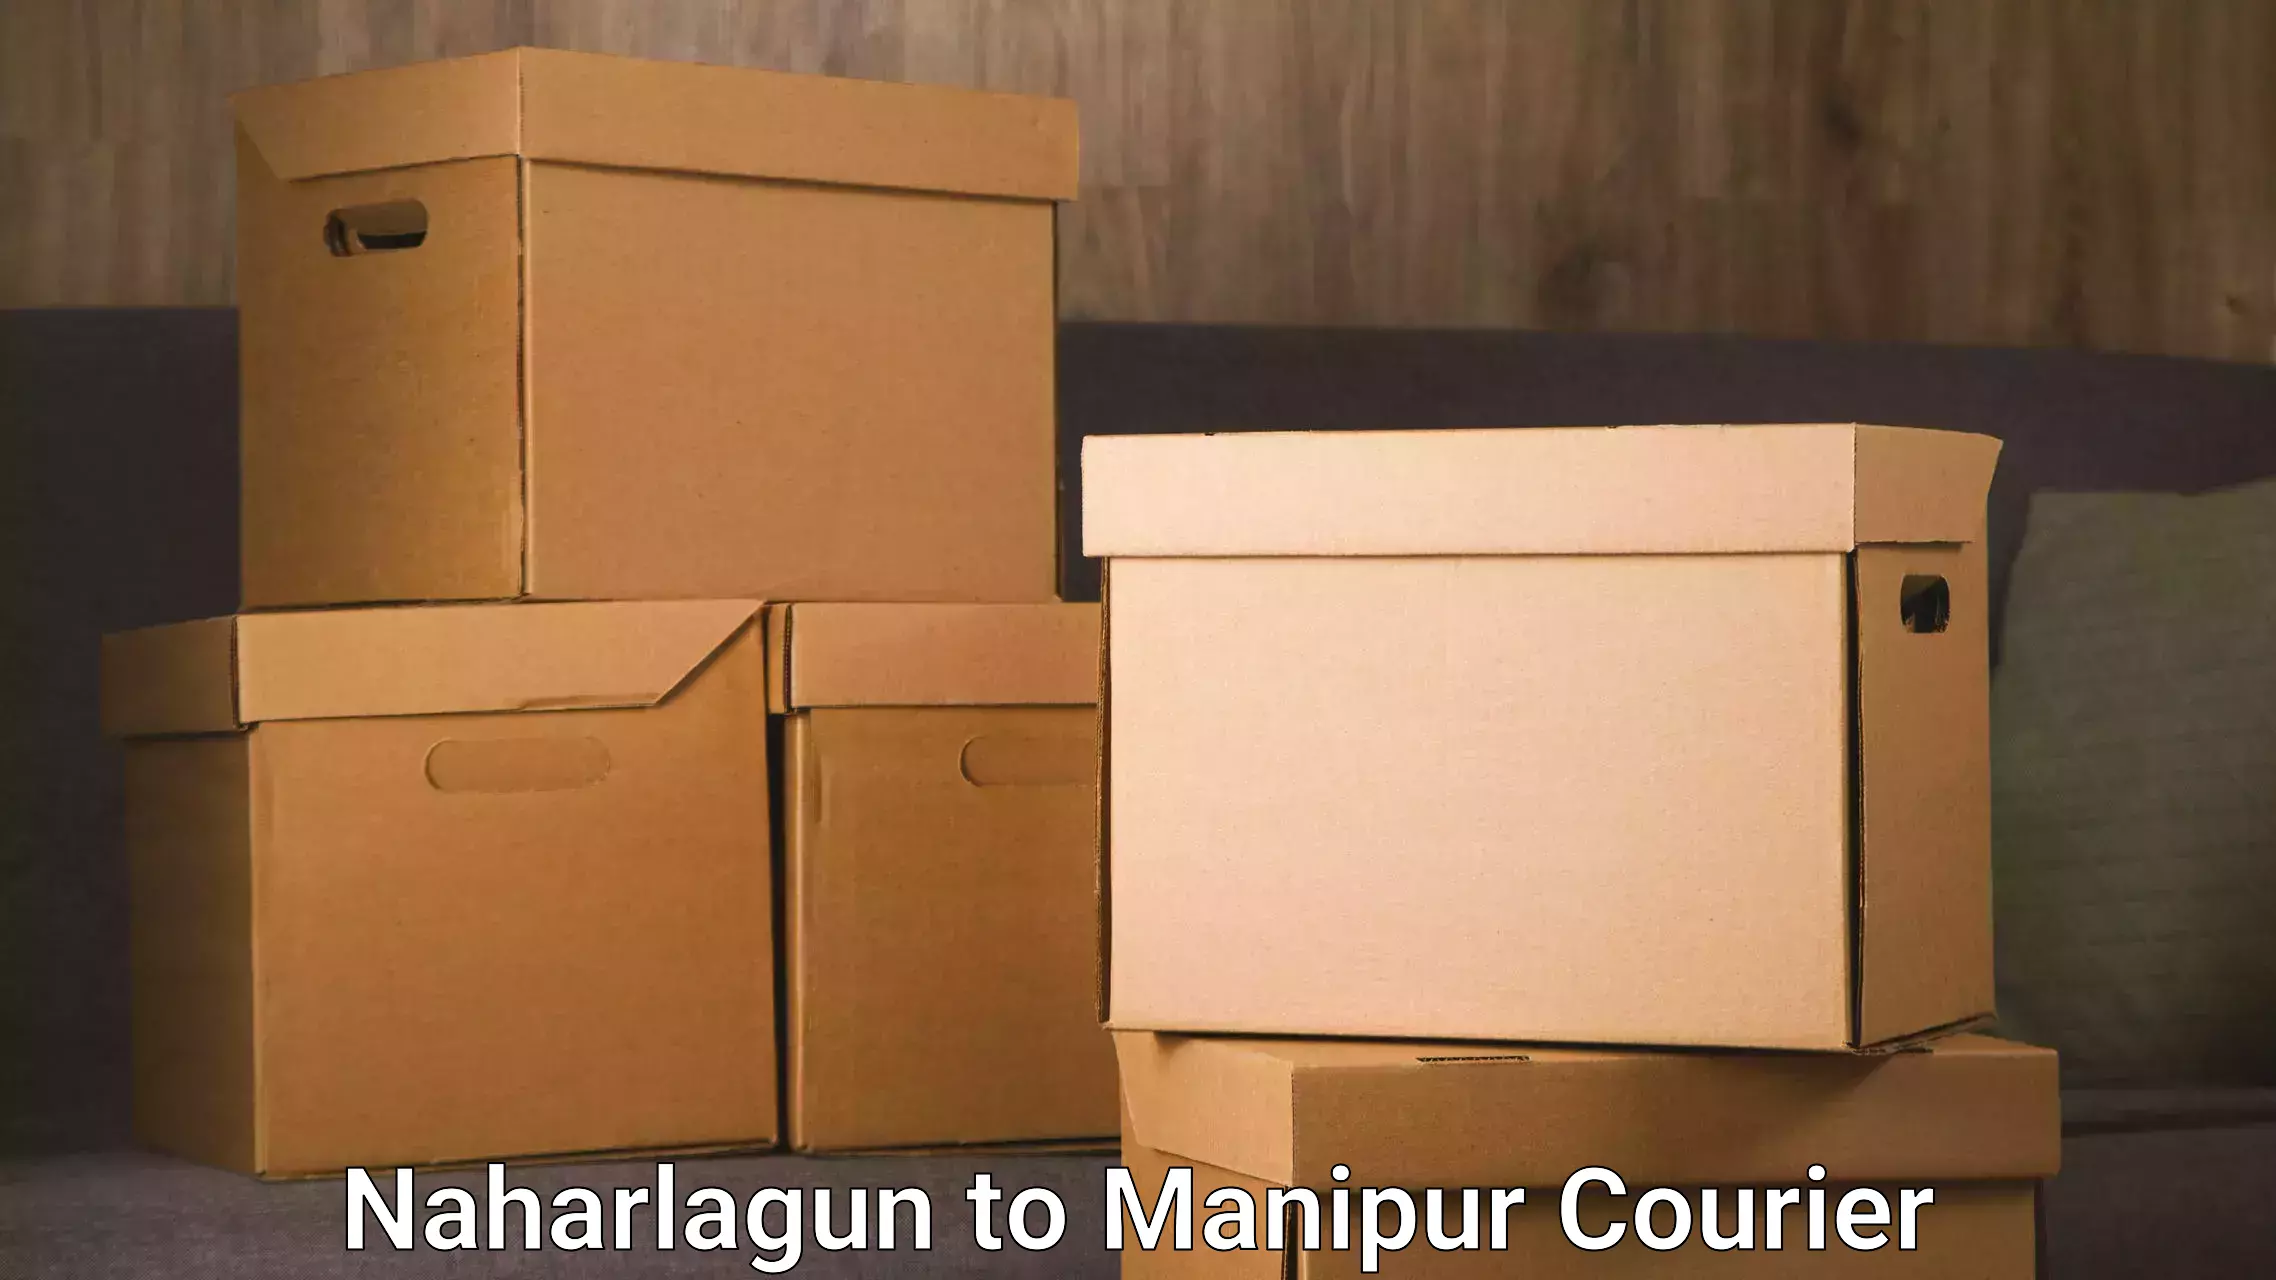 24-hour courier service Naharlagun to Moirang